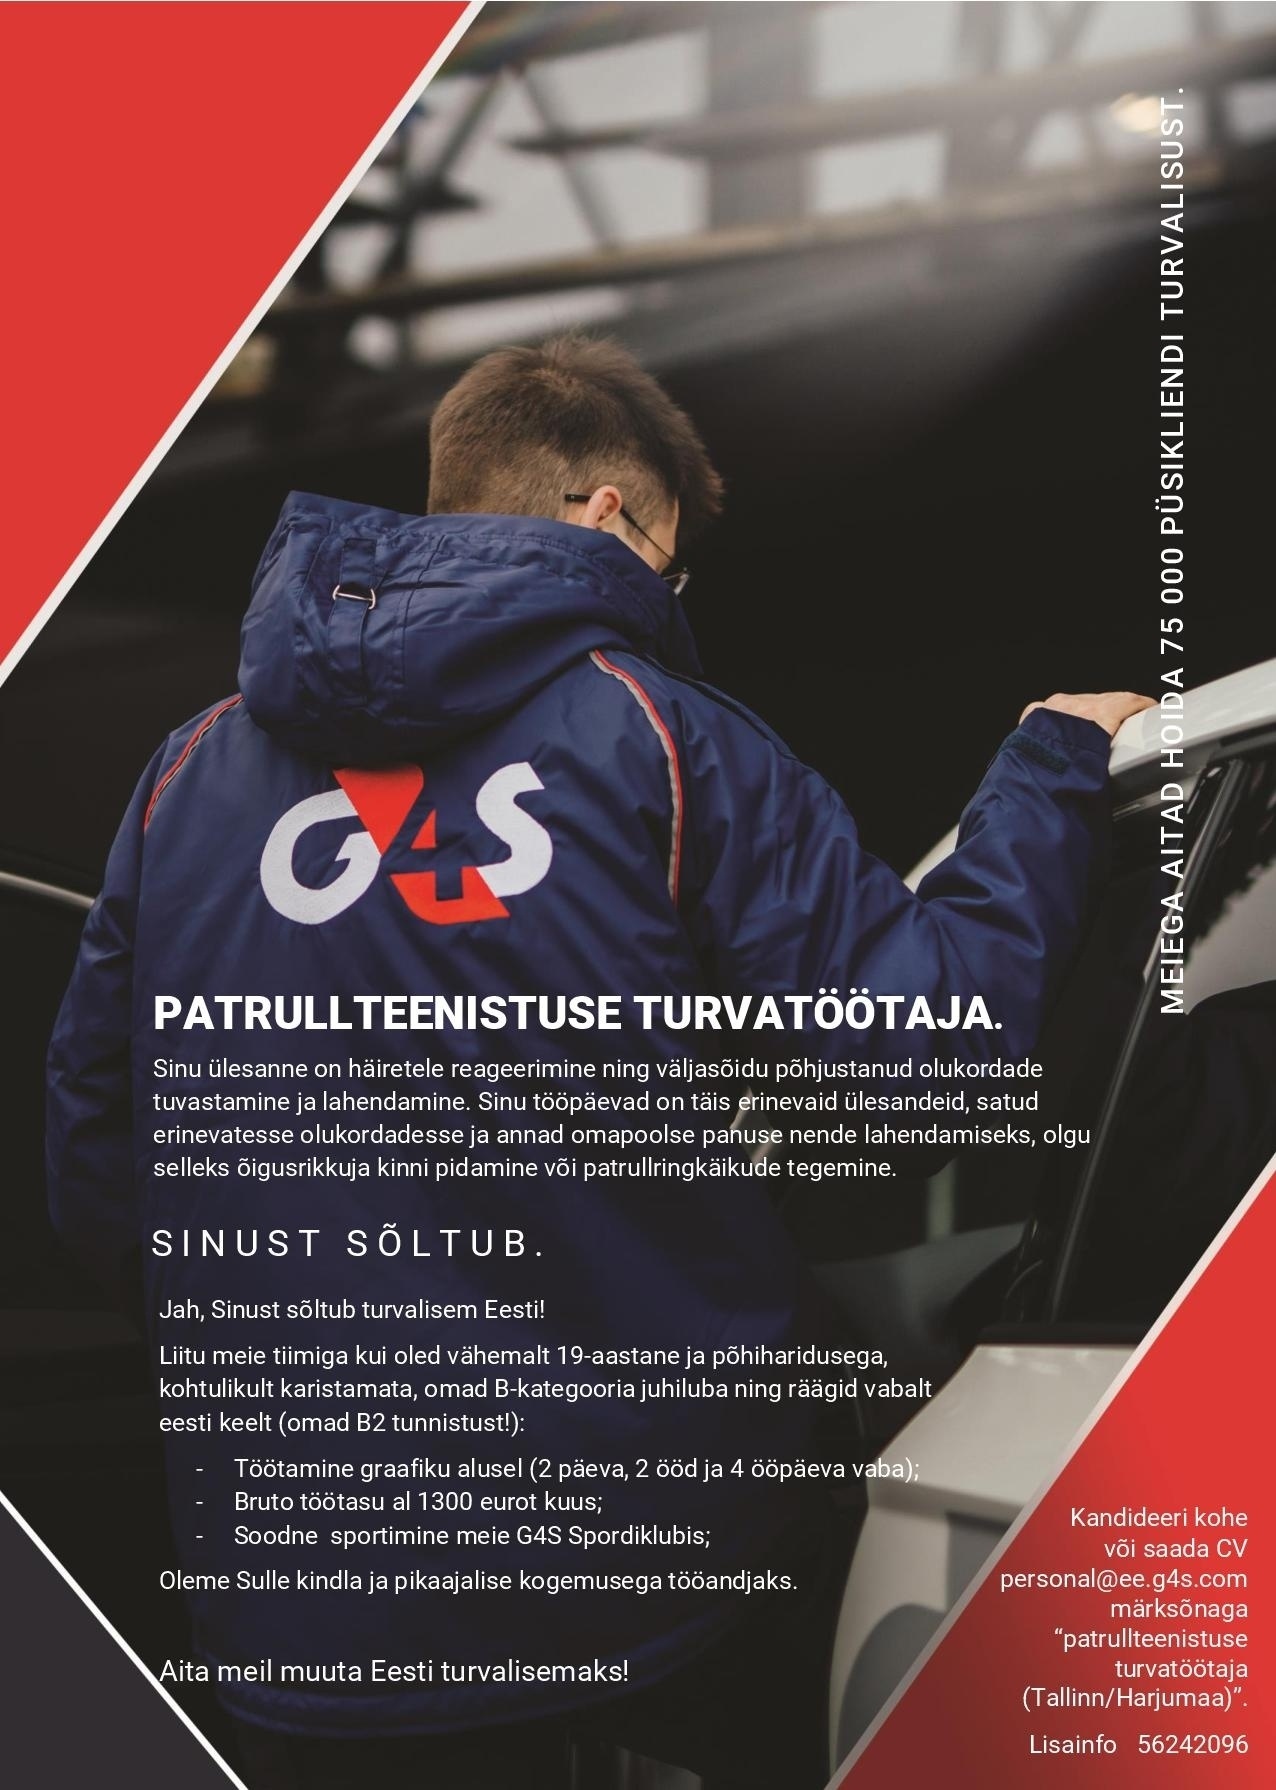 AS G4S Eesti Patrullteenistuse turvatöötaja Tallinnas ja Harjumaal